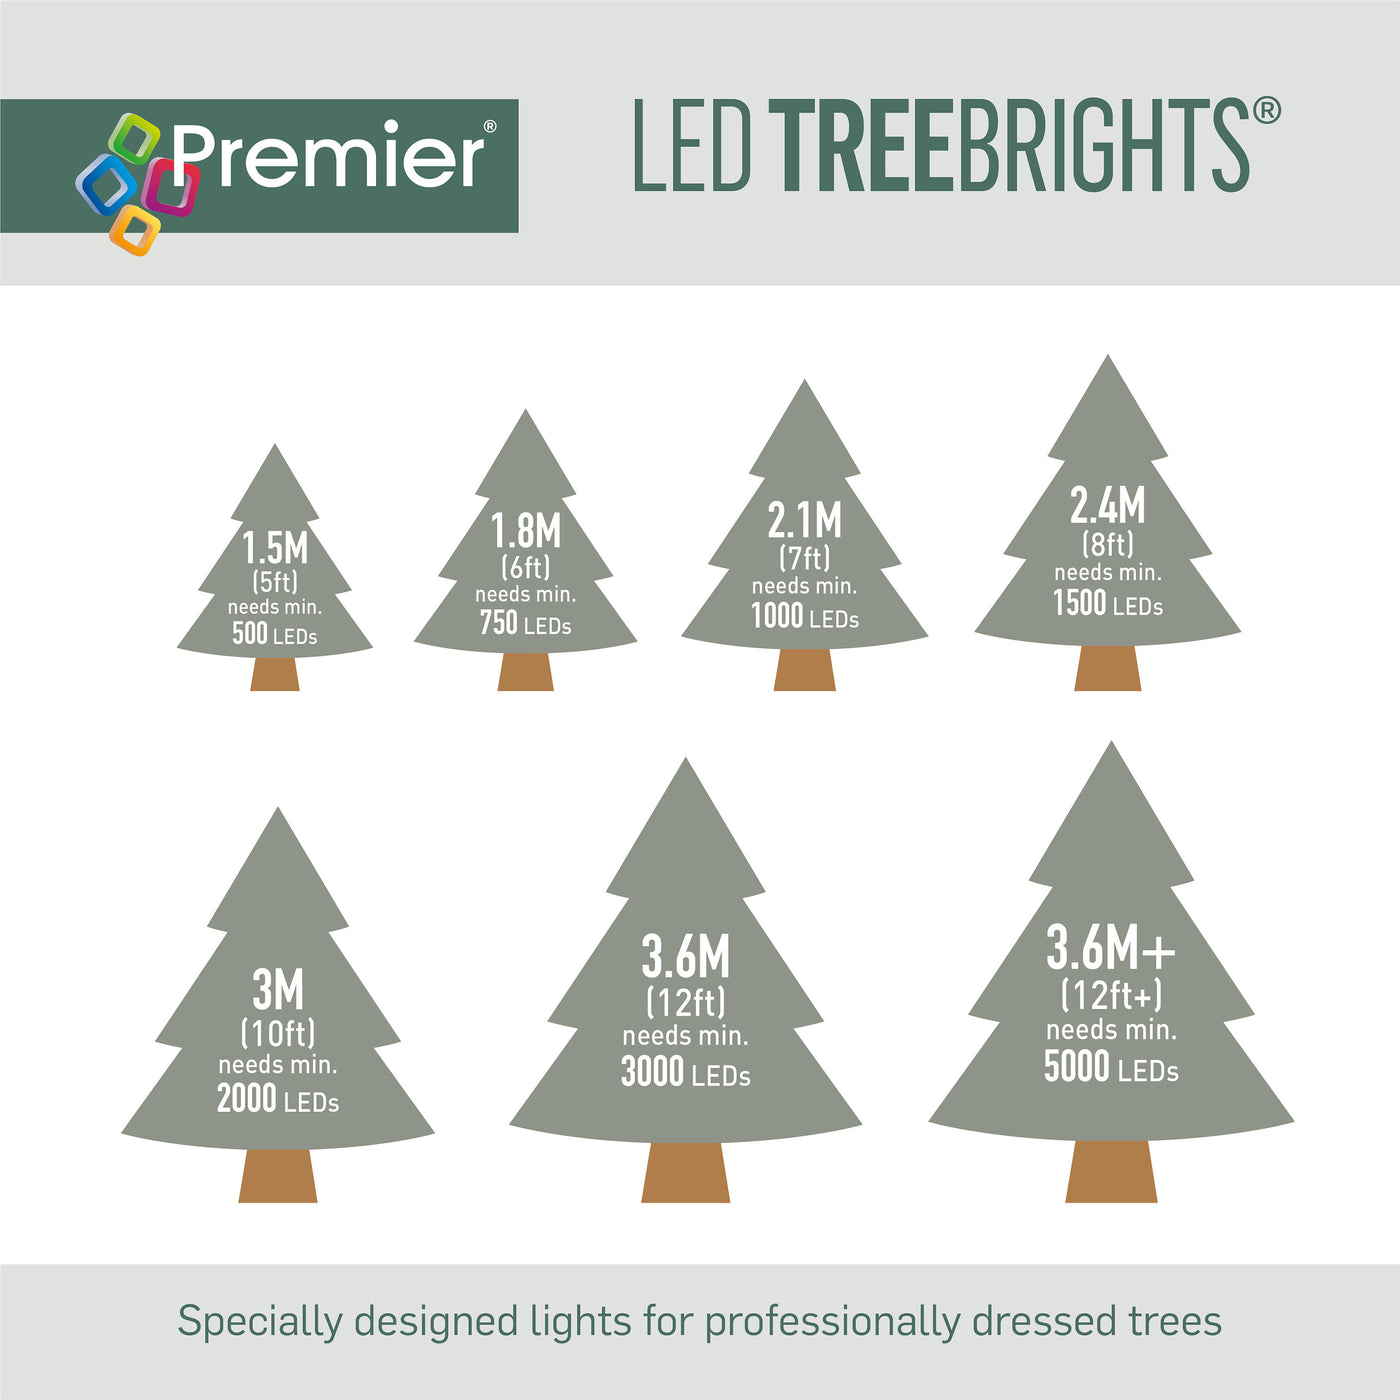 500 Multi Action LED TreeBrights Christmas Tree Lights - Vintage Gold